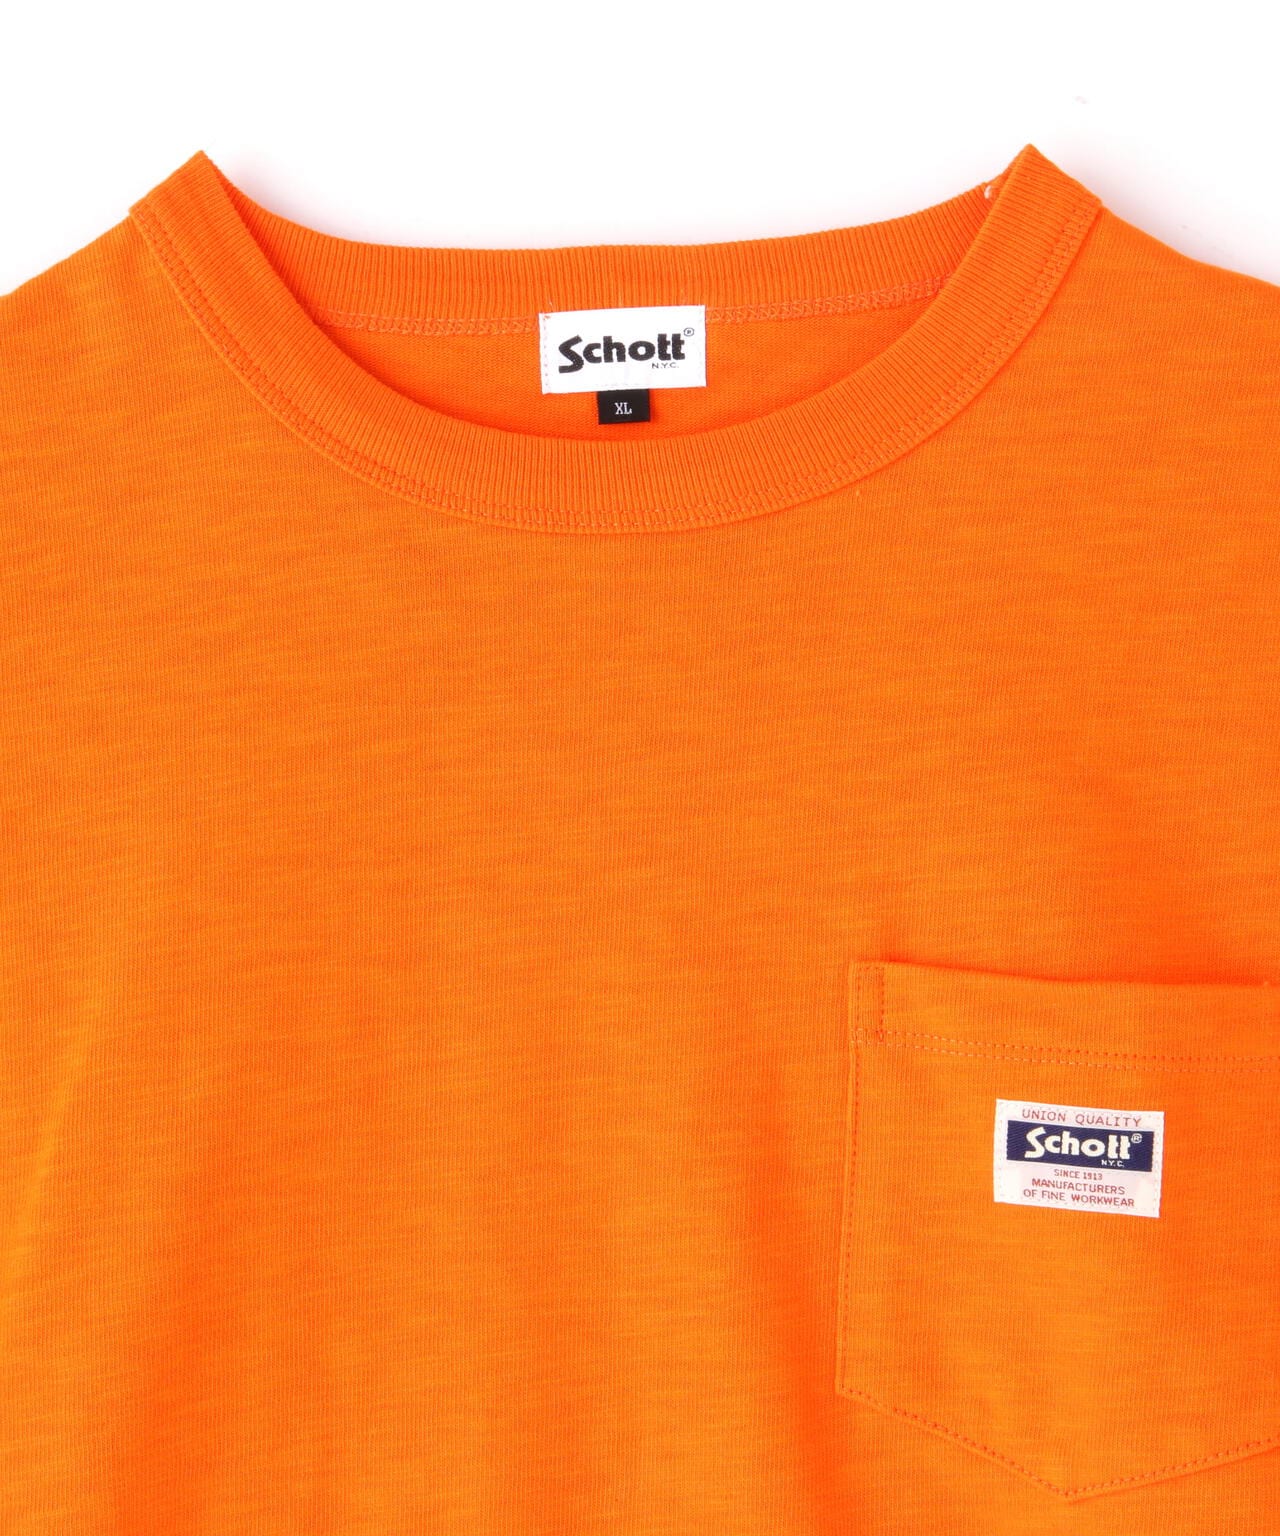 新品　AFFIX ポケットTシャツ　オレンジ　XL